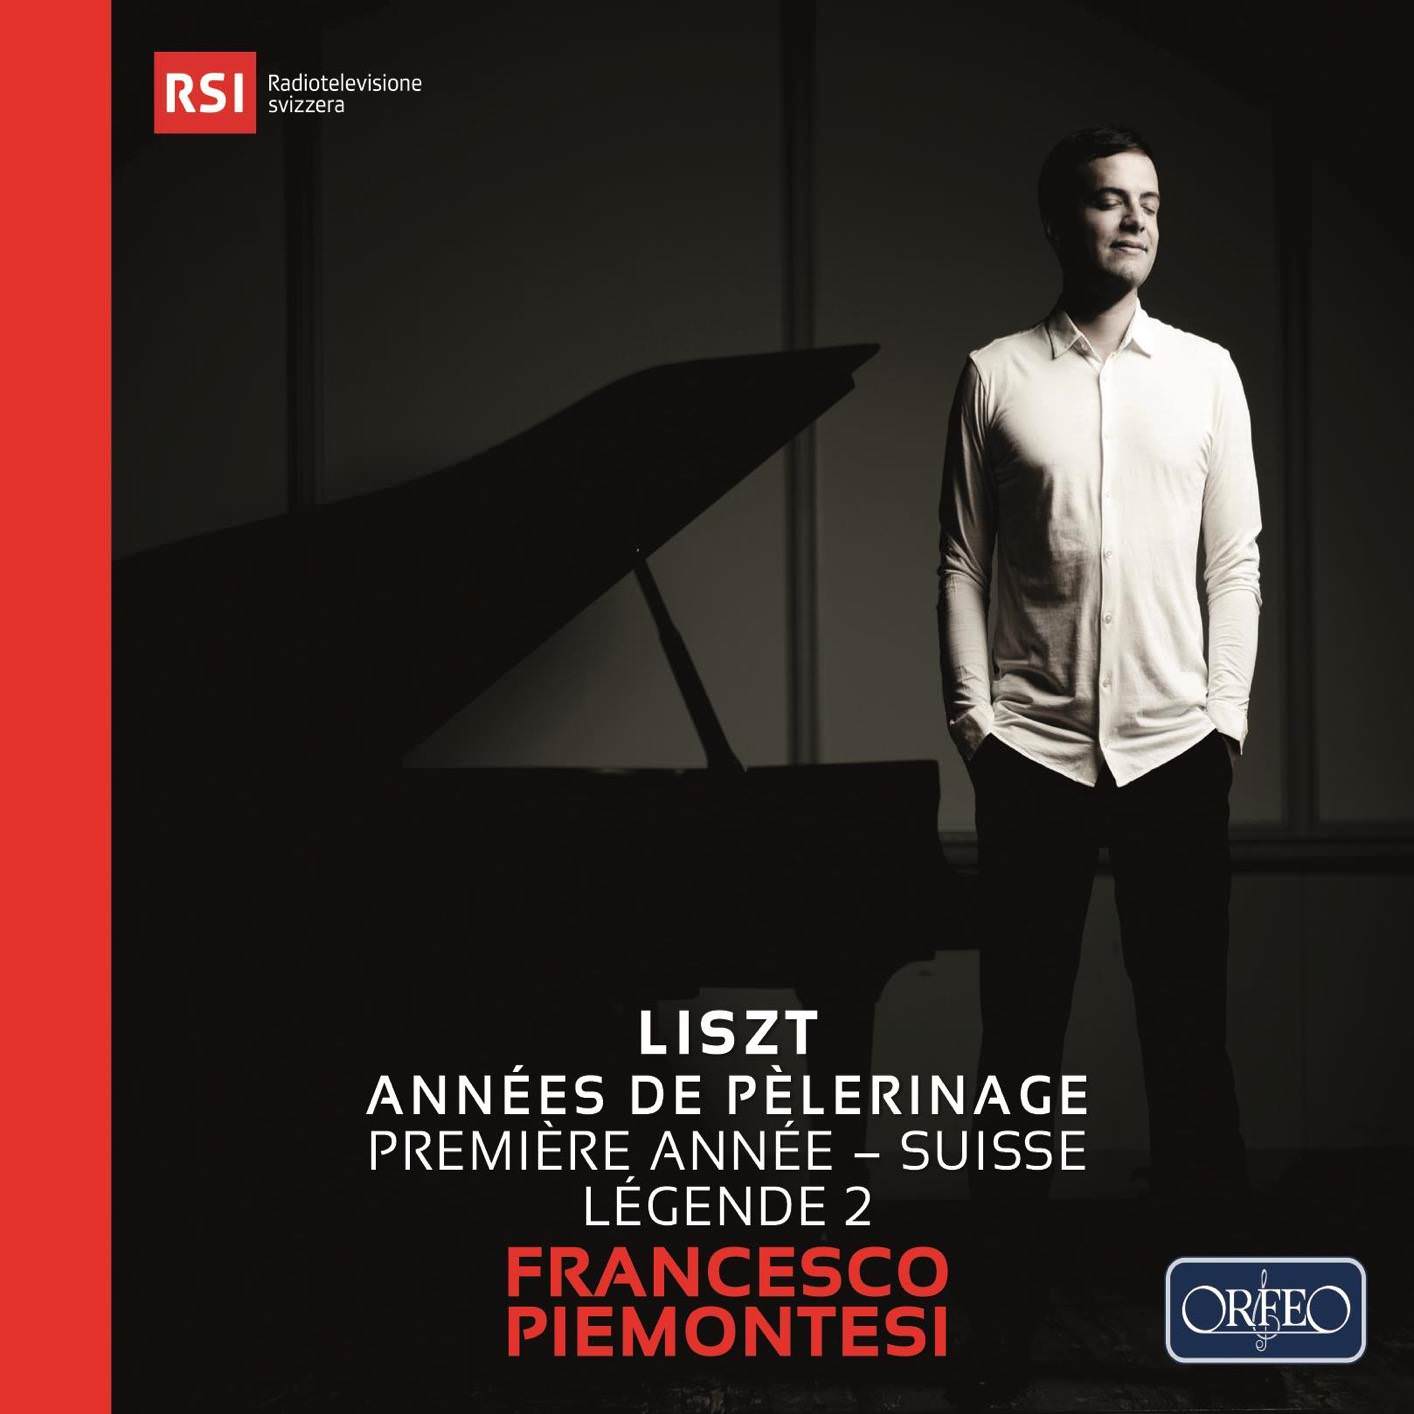 Francesco Piemontesi - Liszt: Annees de pelerinage I, S. 160 "Suisse" & Legende No. 2 (2018) [FLAC 24bit/96kHz]